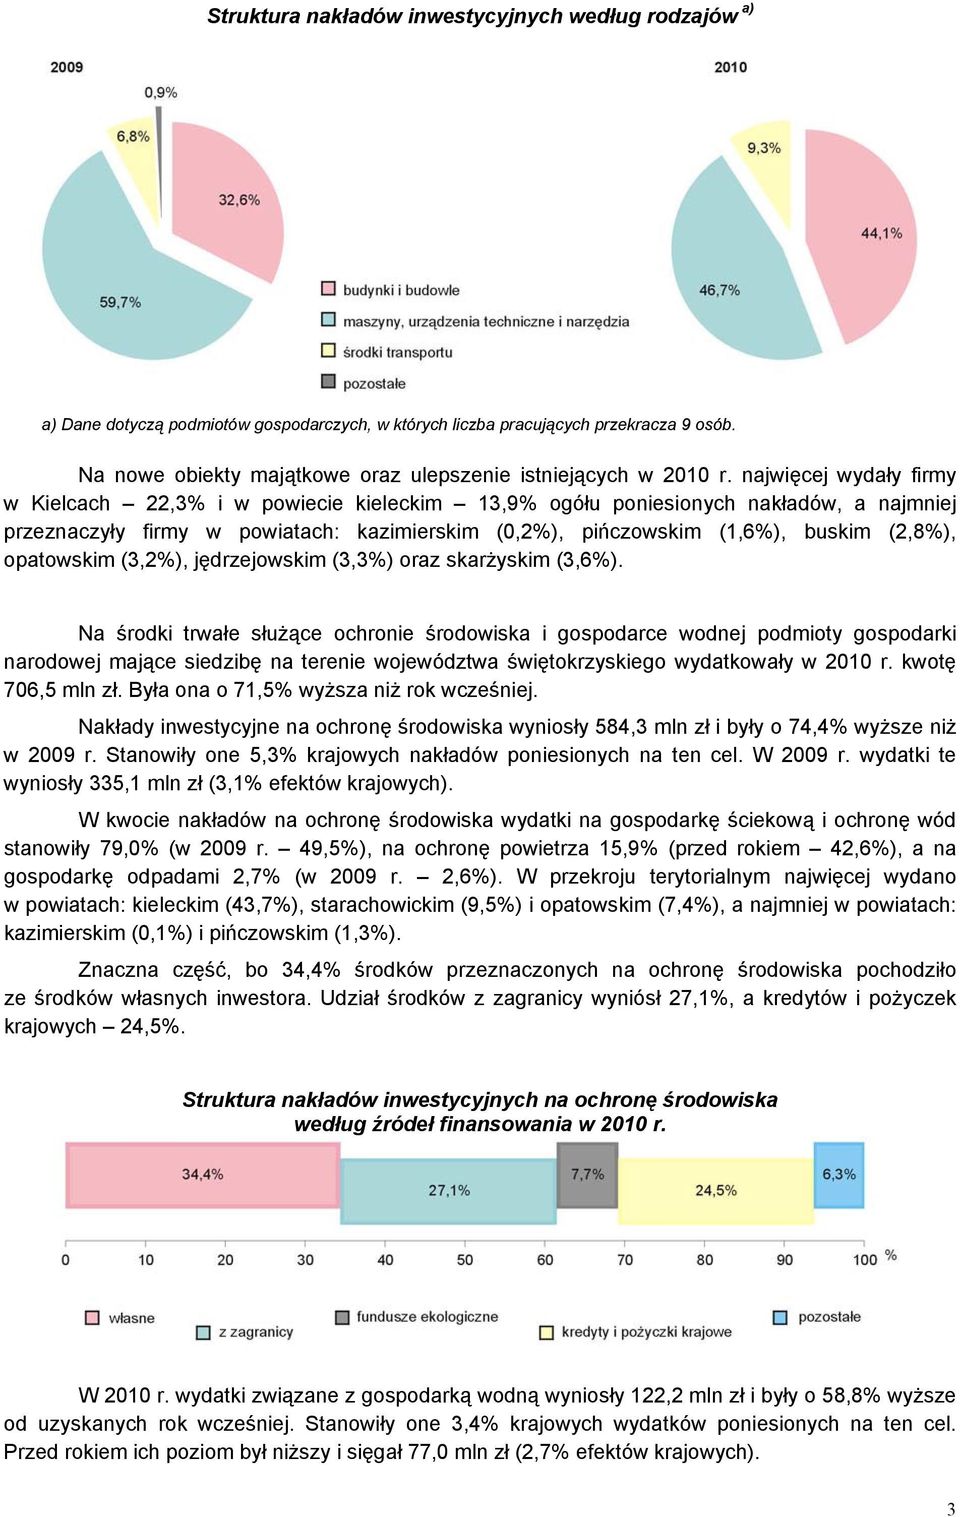 najwięcej wydały firmy w Kielcach 22,3% i w powiecie kieleckim 13,9% ogółu poniesionych nakładów, a najmniej przeznaczyły firmy w powiatach: kazimierskim (0,2%), pińczowskim (1,6%), buskim (2,8%),